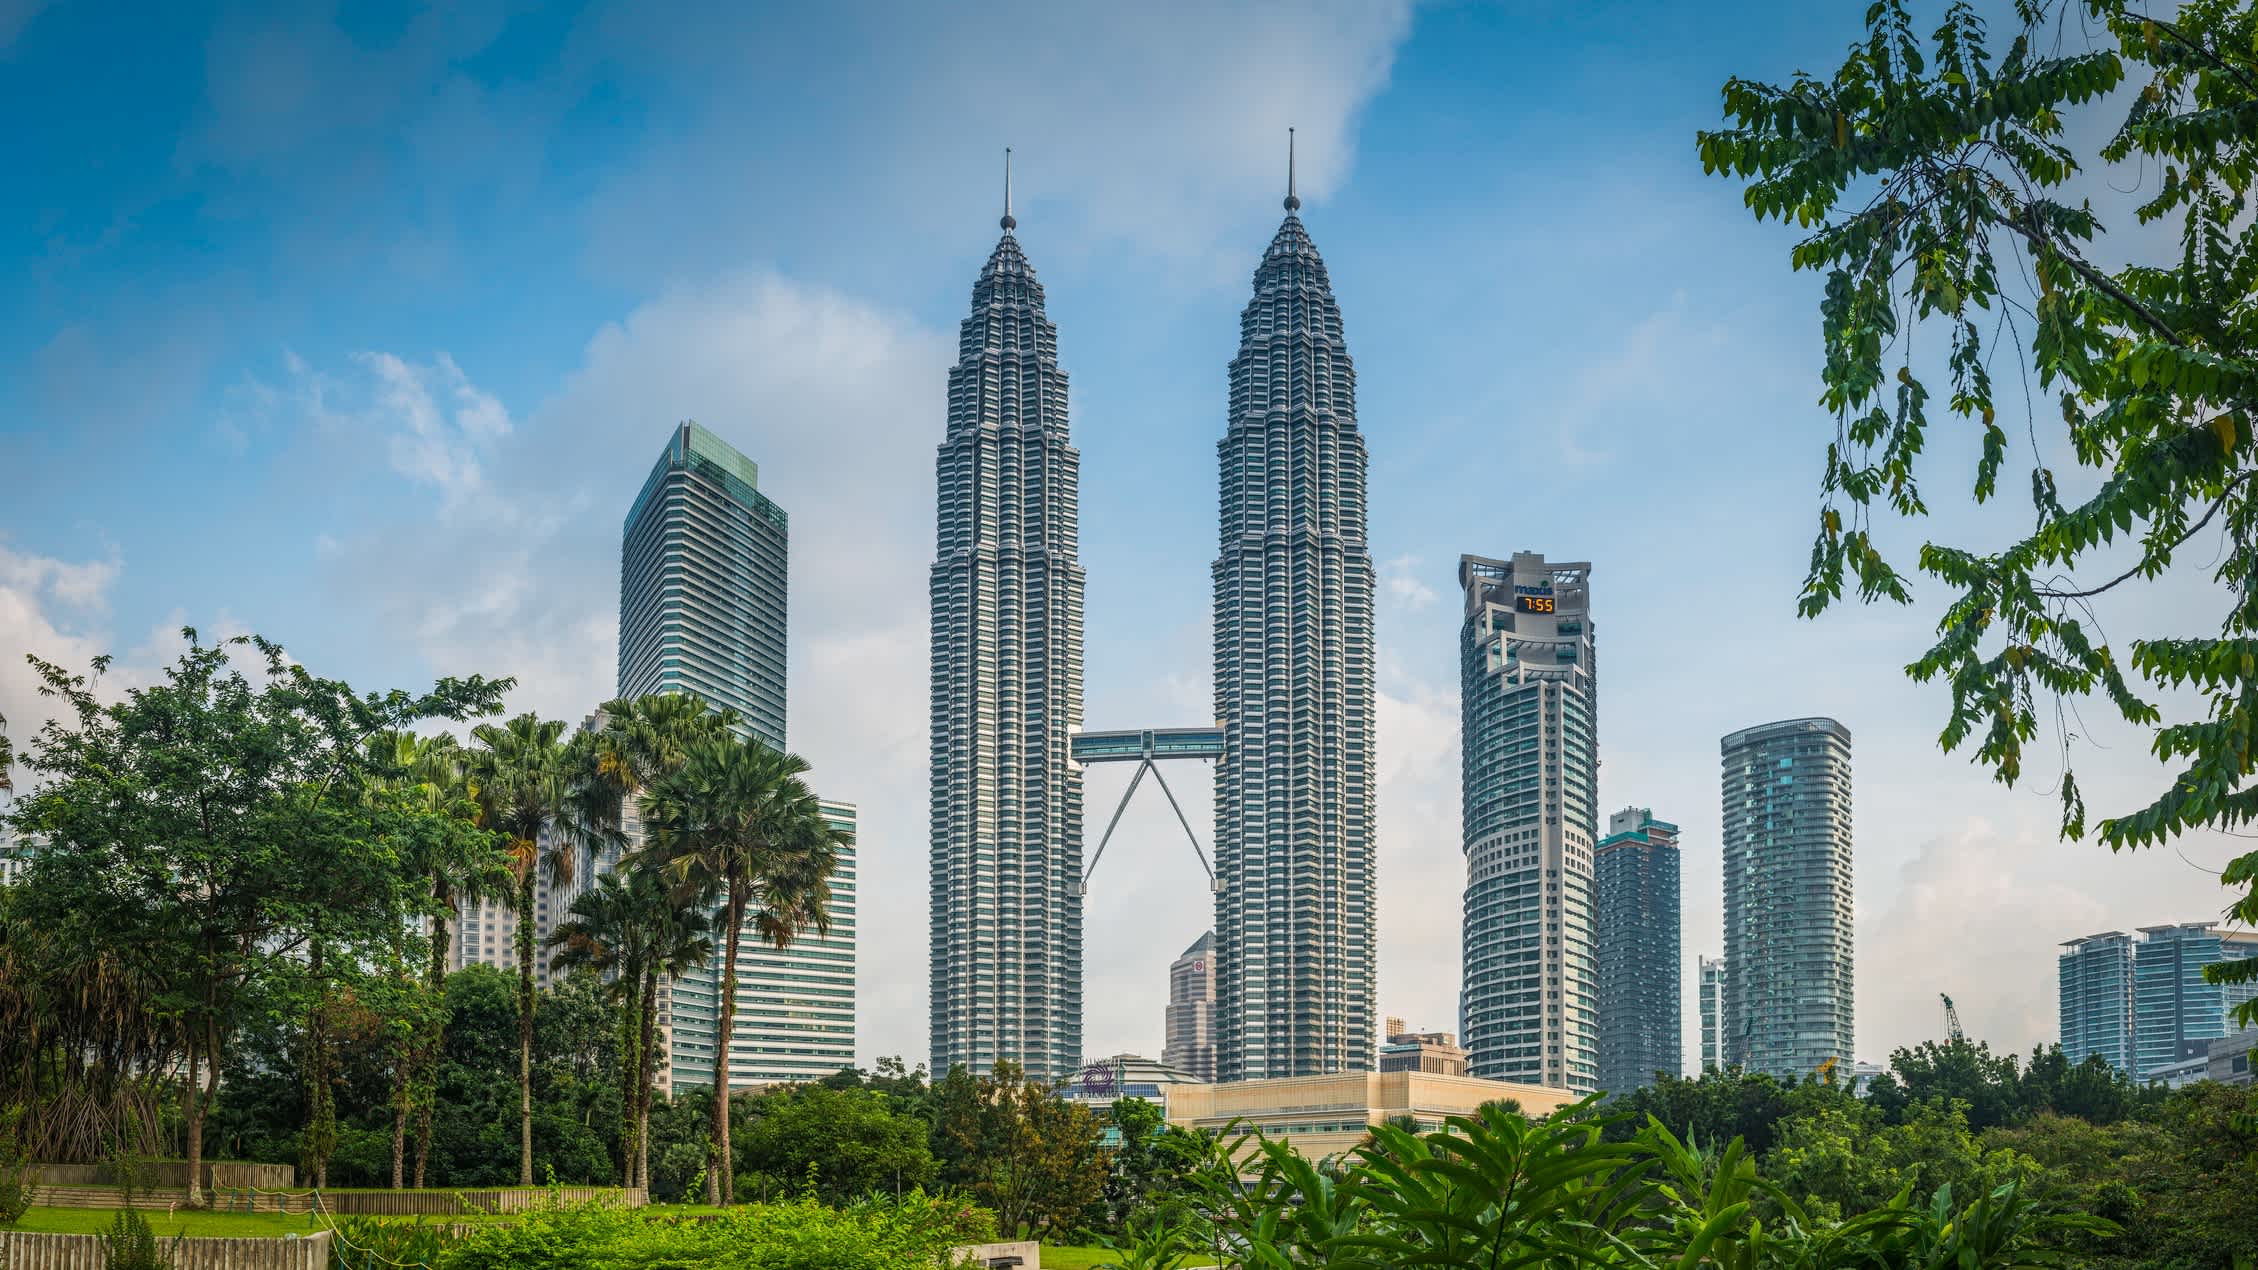 Die Türme der Petronas Towers in Kuala Lumpur, Malaysia
